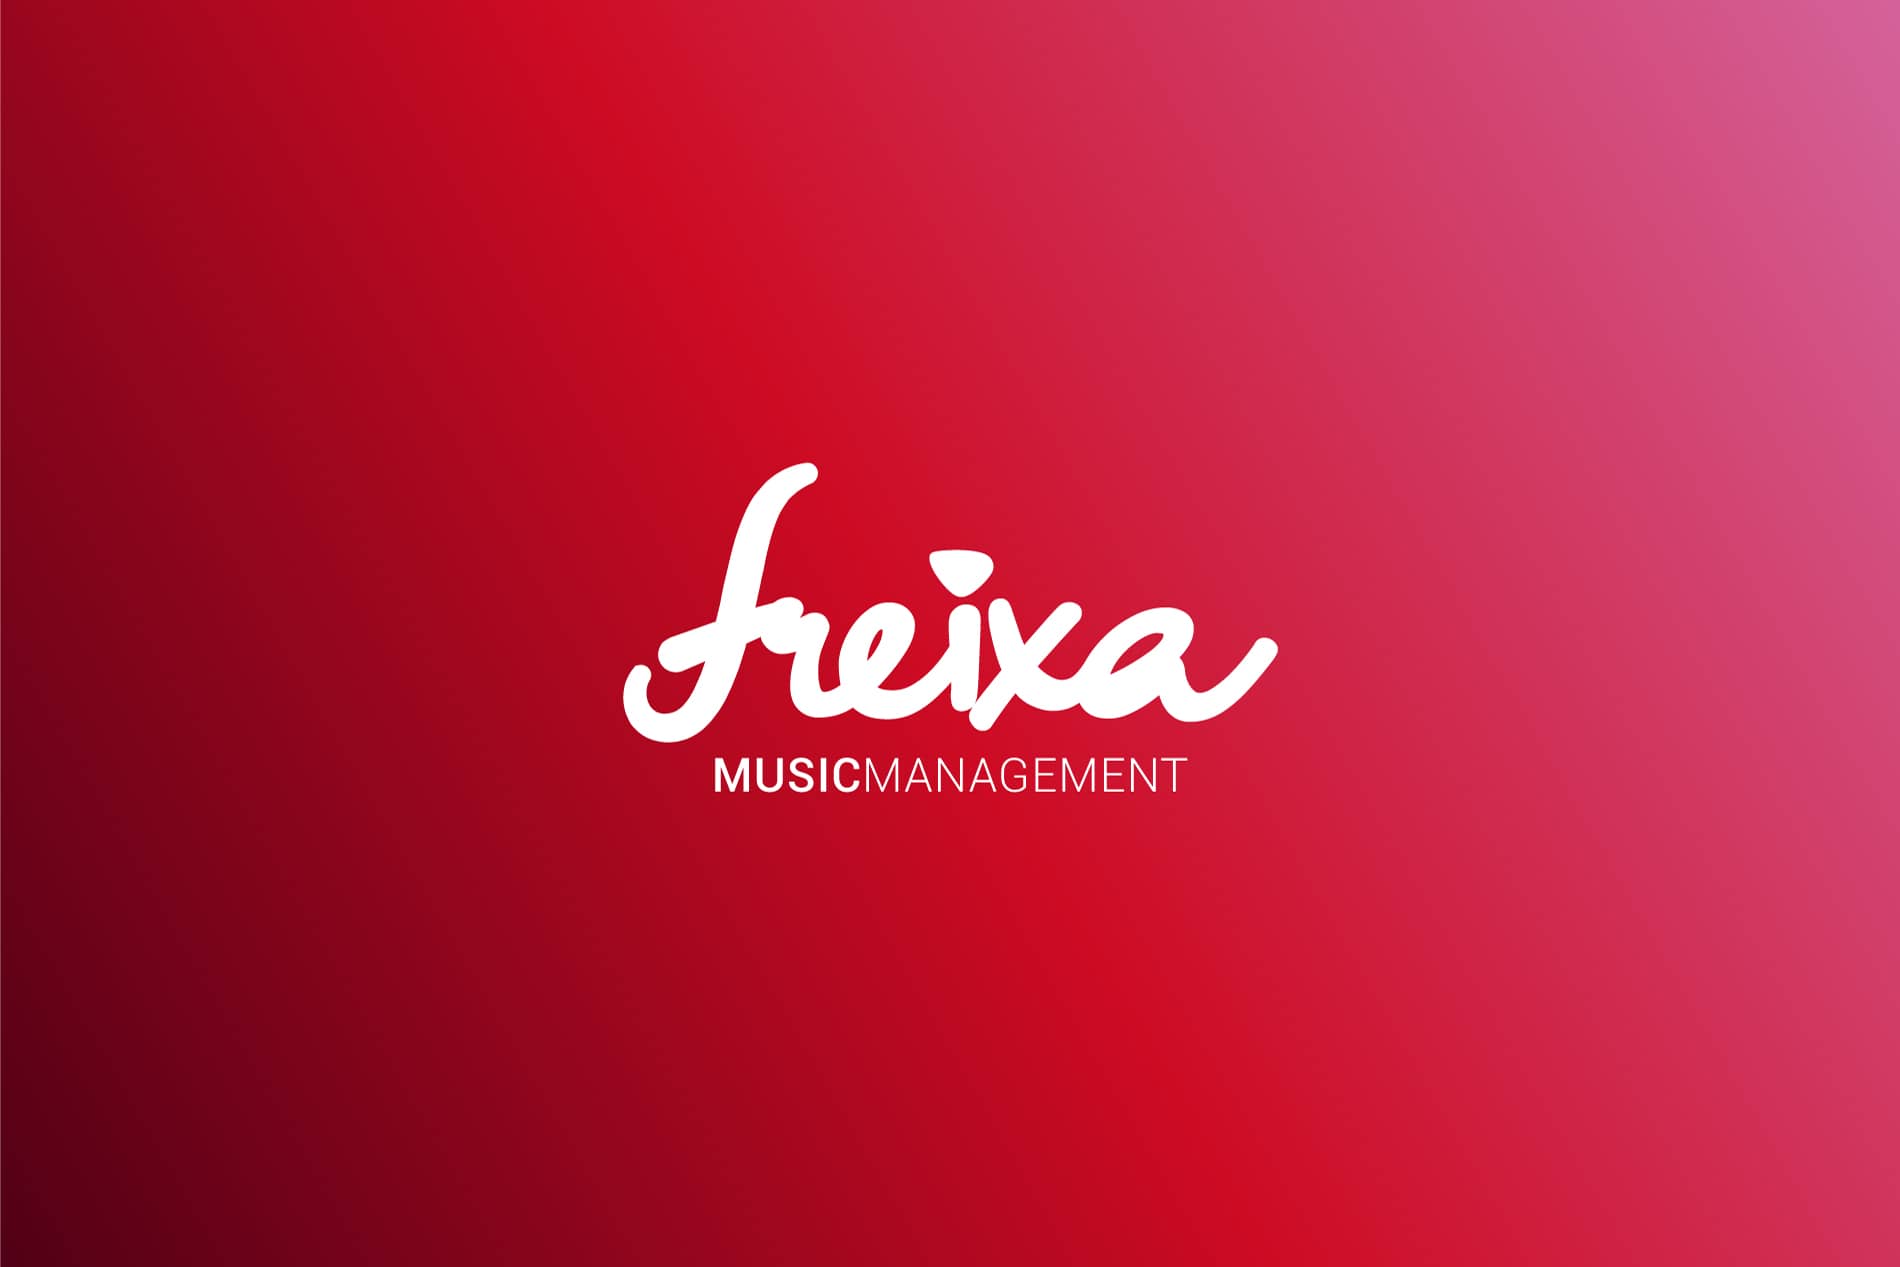 Logotipo Freixa Music blanco sobre fondo rosa branding por The Acctitude